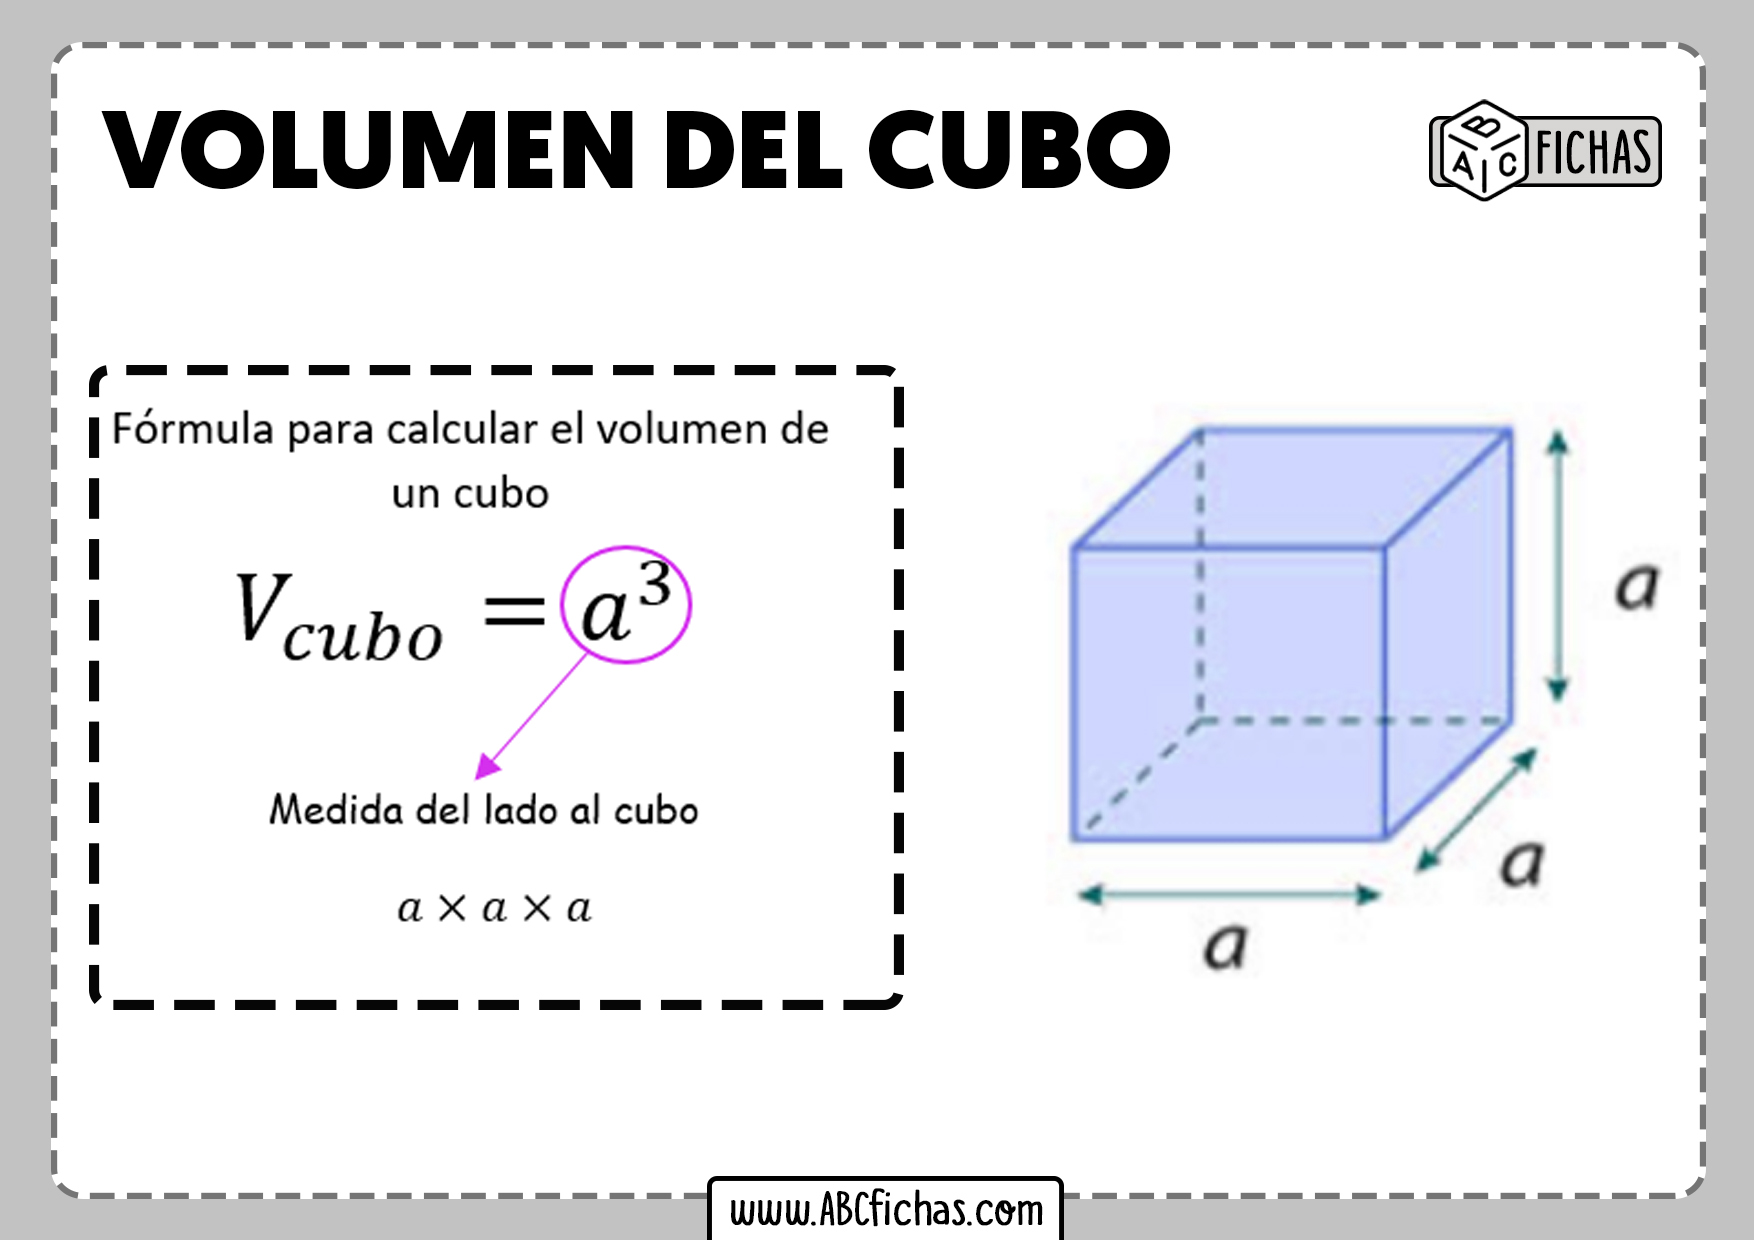 Calcular el volumen de un cubo